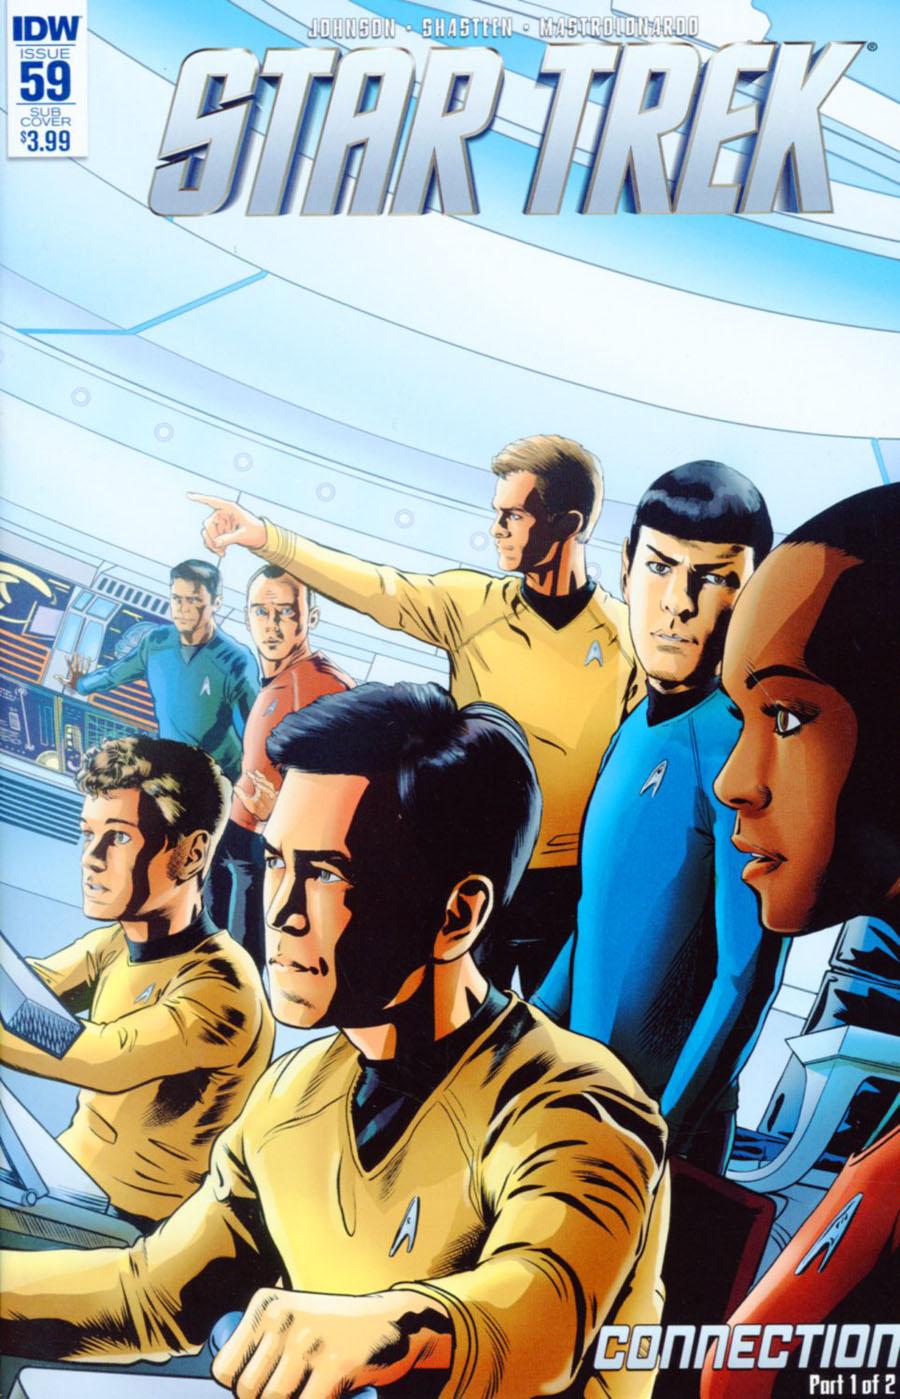 Star Trek (IDW) Vol. 1 #59